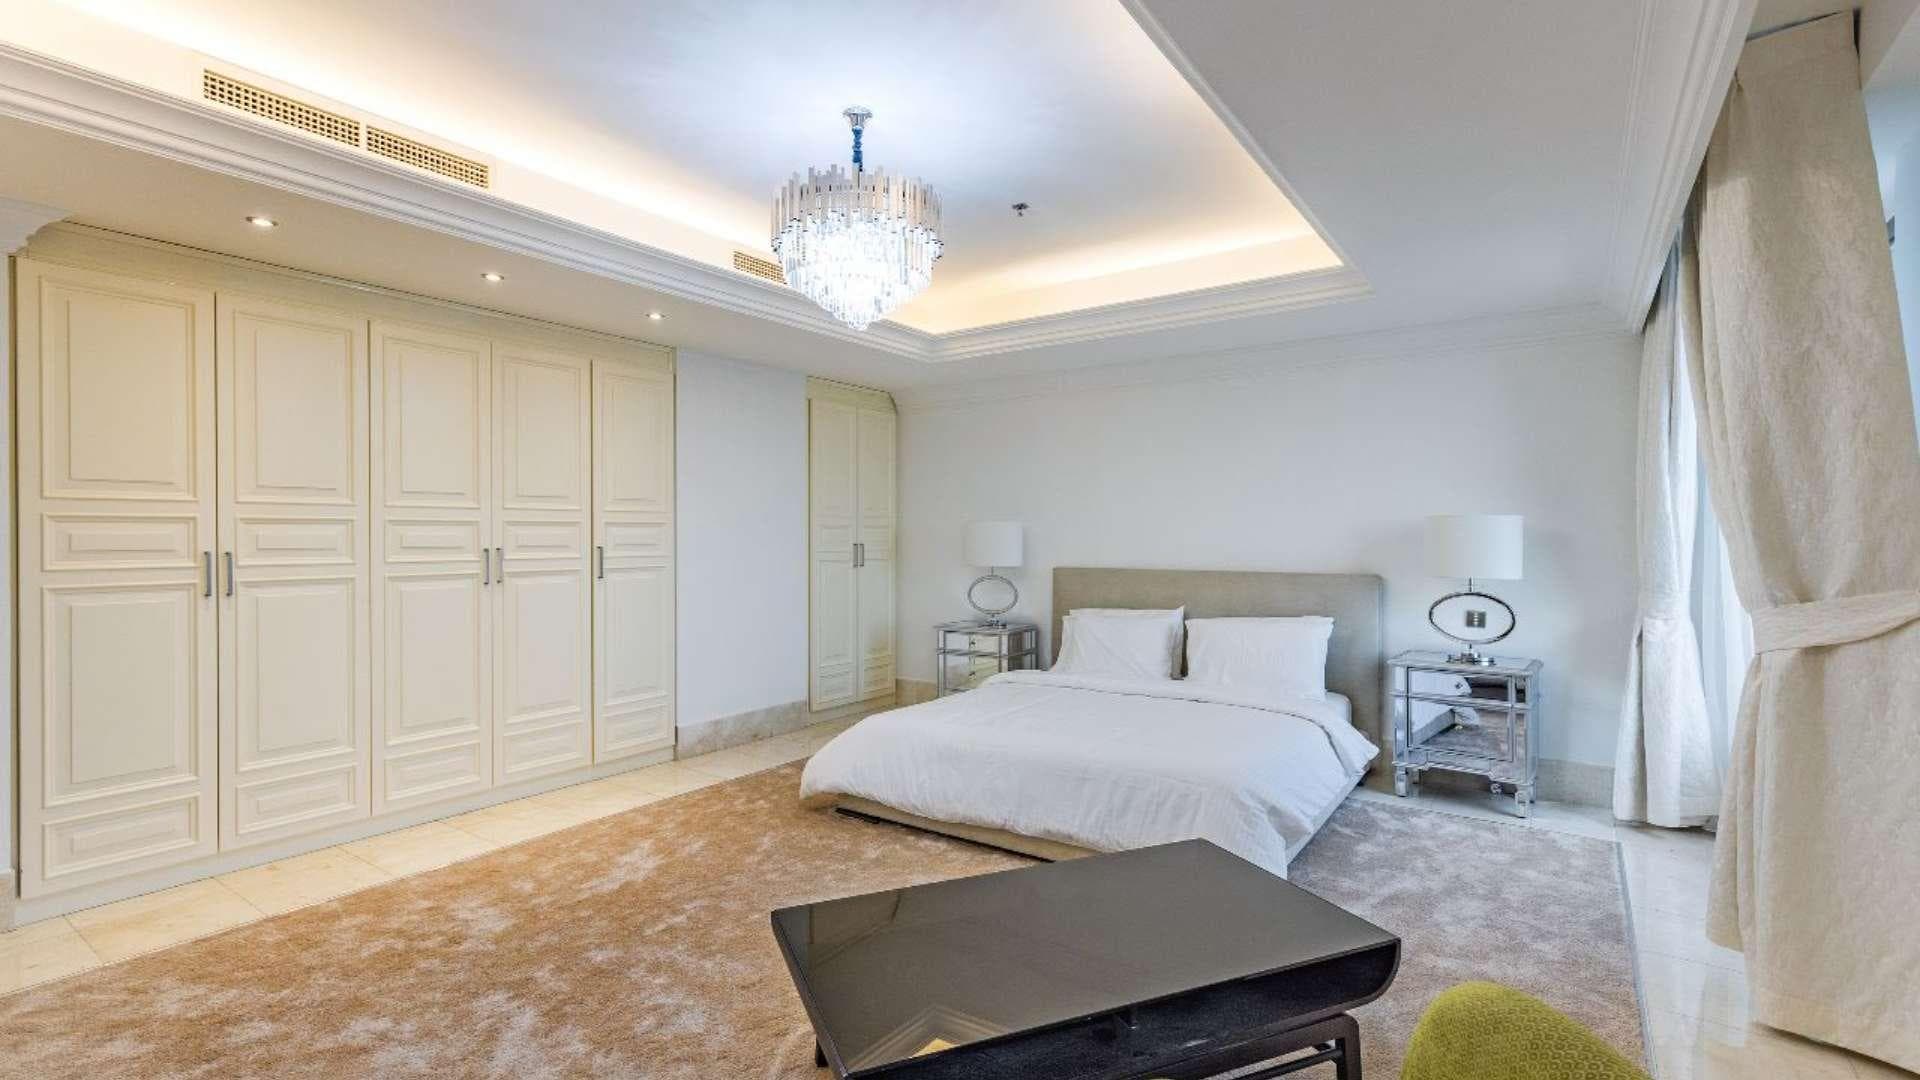 4 Bedroom Apartment For Rent Shams Lp20196 280ba058d442a600.jpg